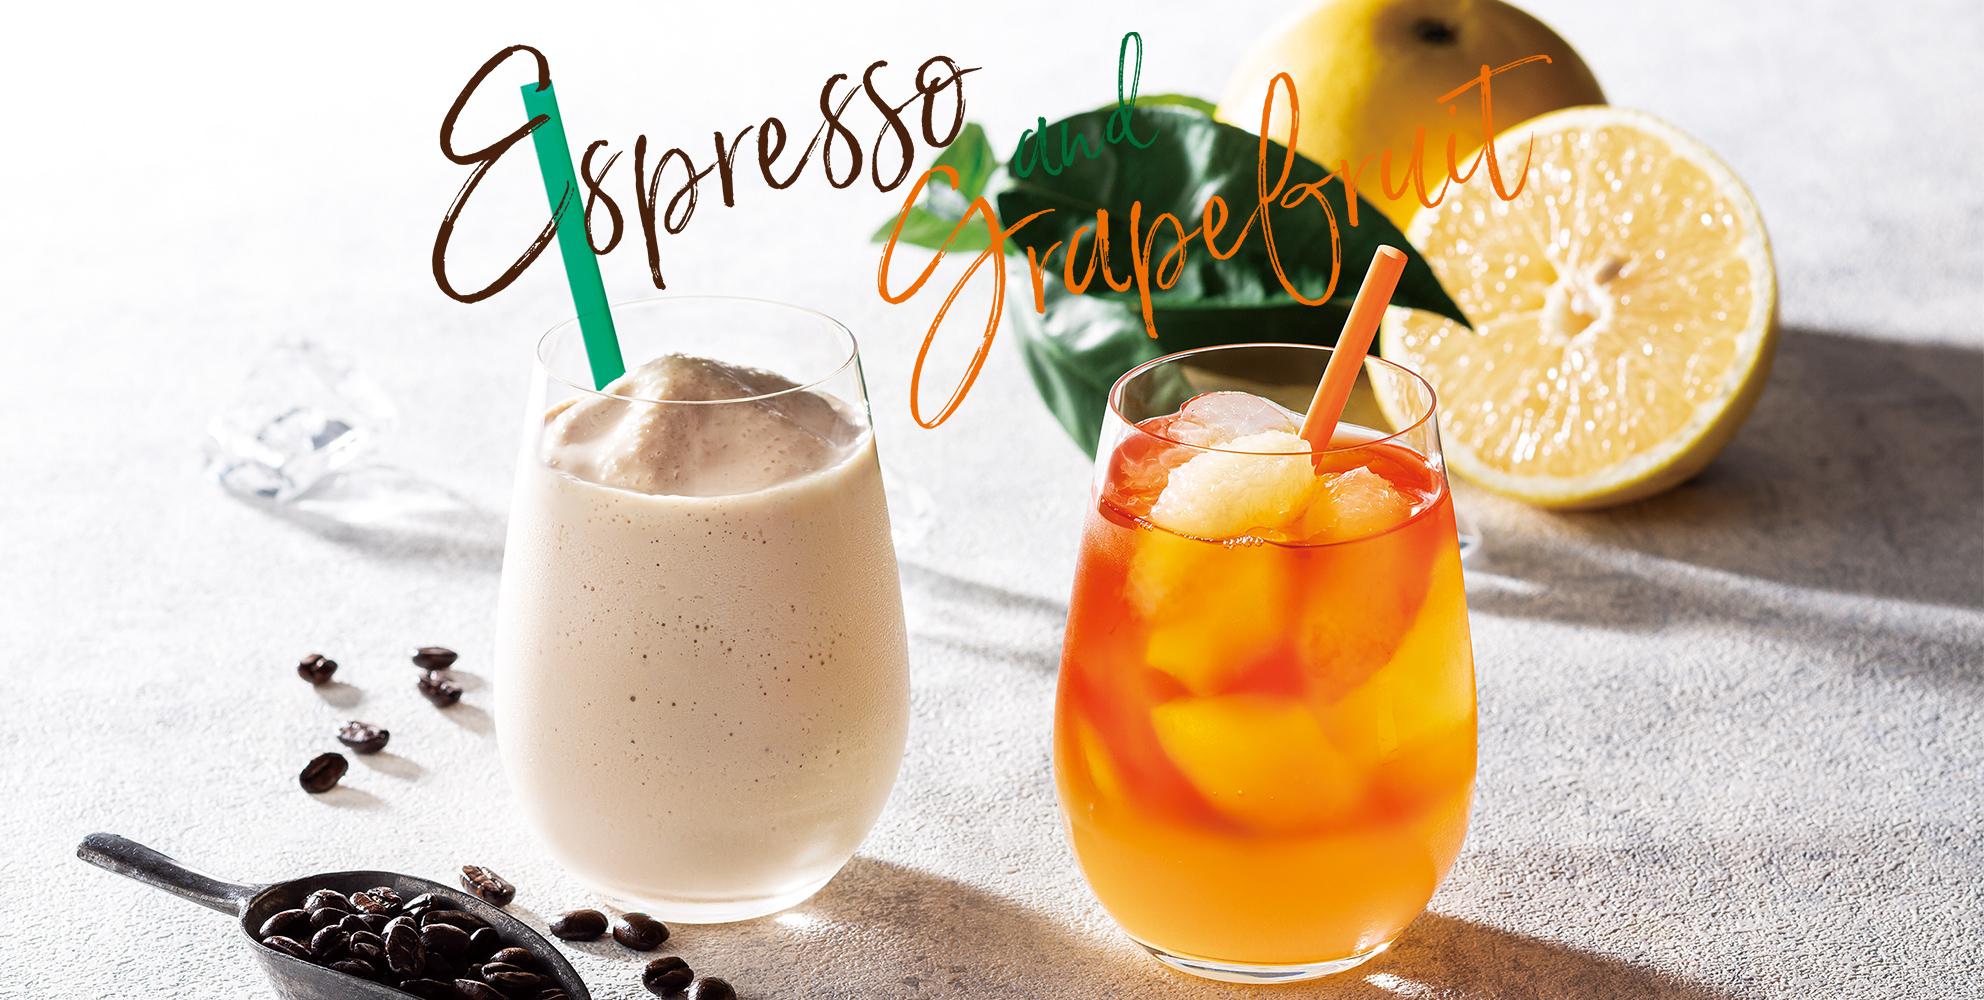 【TULLY’S COFFEE】エスプレッソショットの奥深い味わいと香りを楽しむ『エスプレッソシェイク』など、初夏におすすめのドリンクが登場。